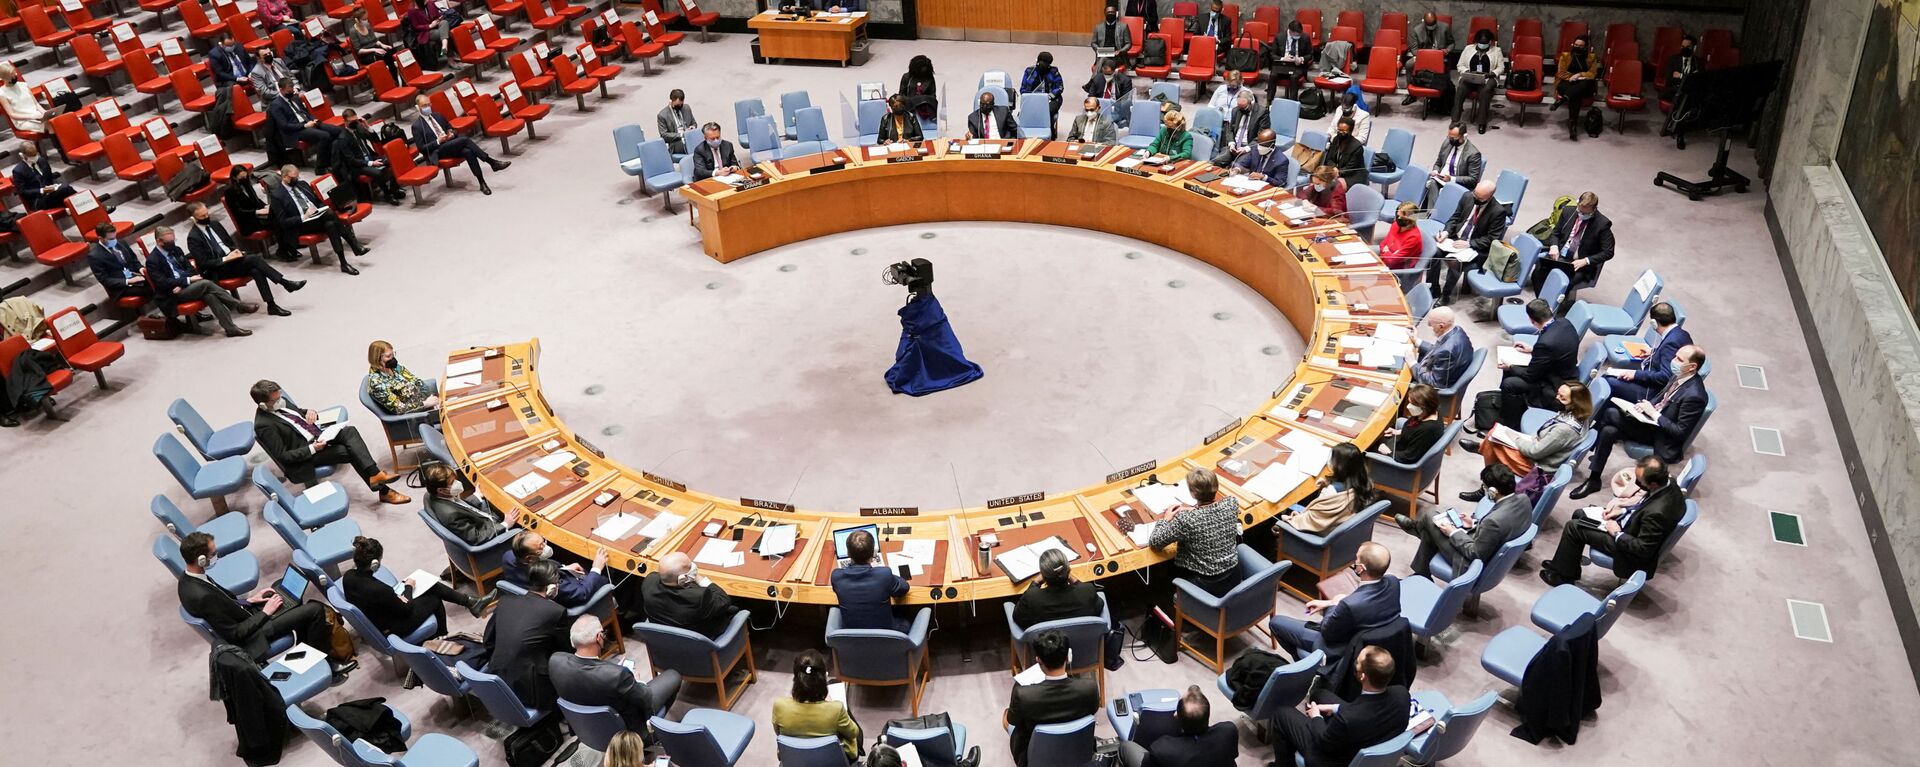  اجتماع مجلس الأمن التابع للأمم المتحدة بعد أن اعترفت روسيا بمنطقتين منفصلتين في شرق أوكرانيا ككيانين مستقلين، في مدينة نيويورك، الولايات المتحدة 21 فبراير 2022. - سبوتنيك عربي, 1920, 26.02.2022